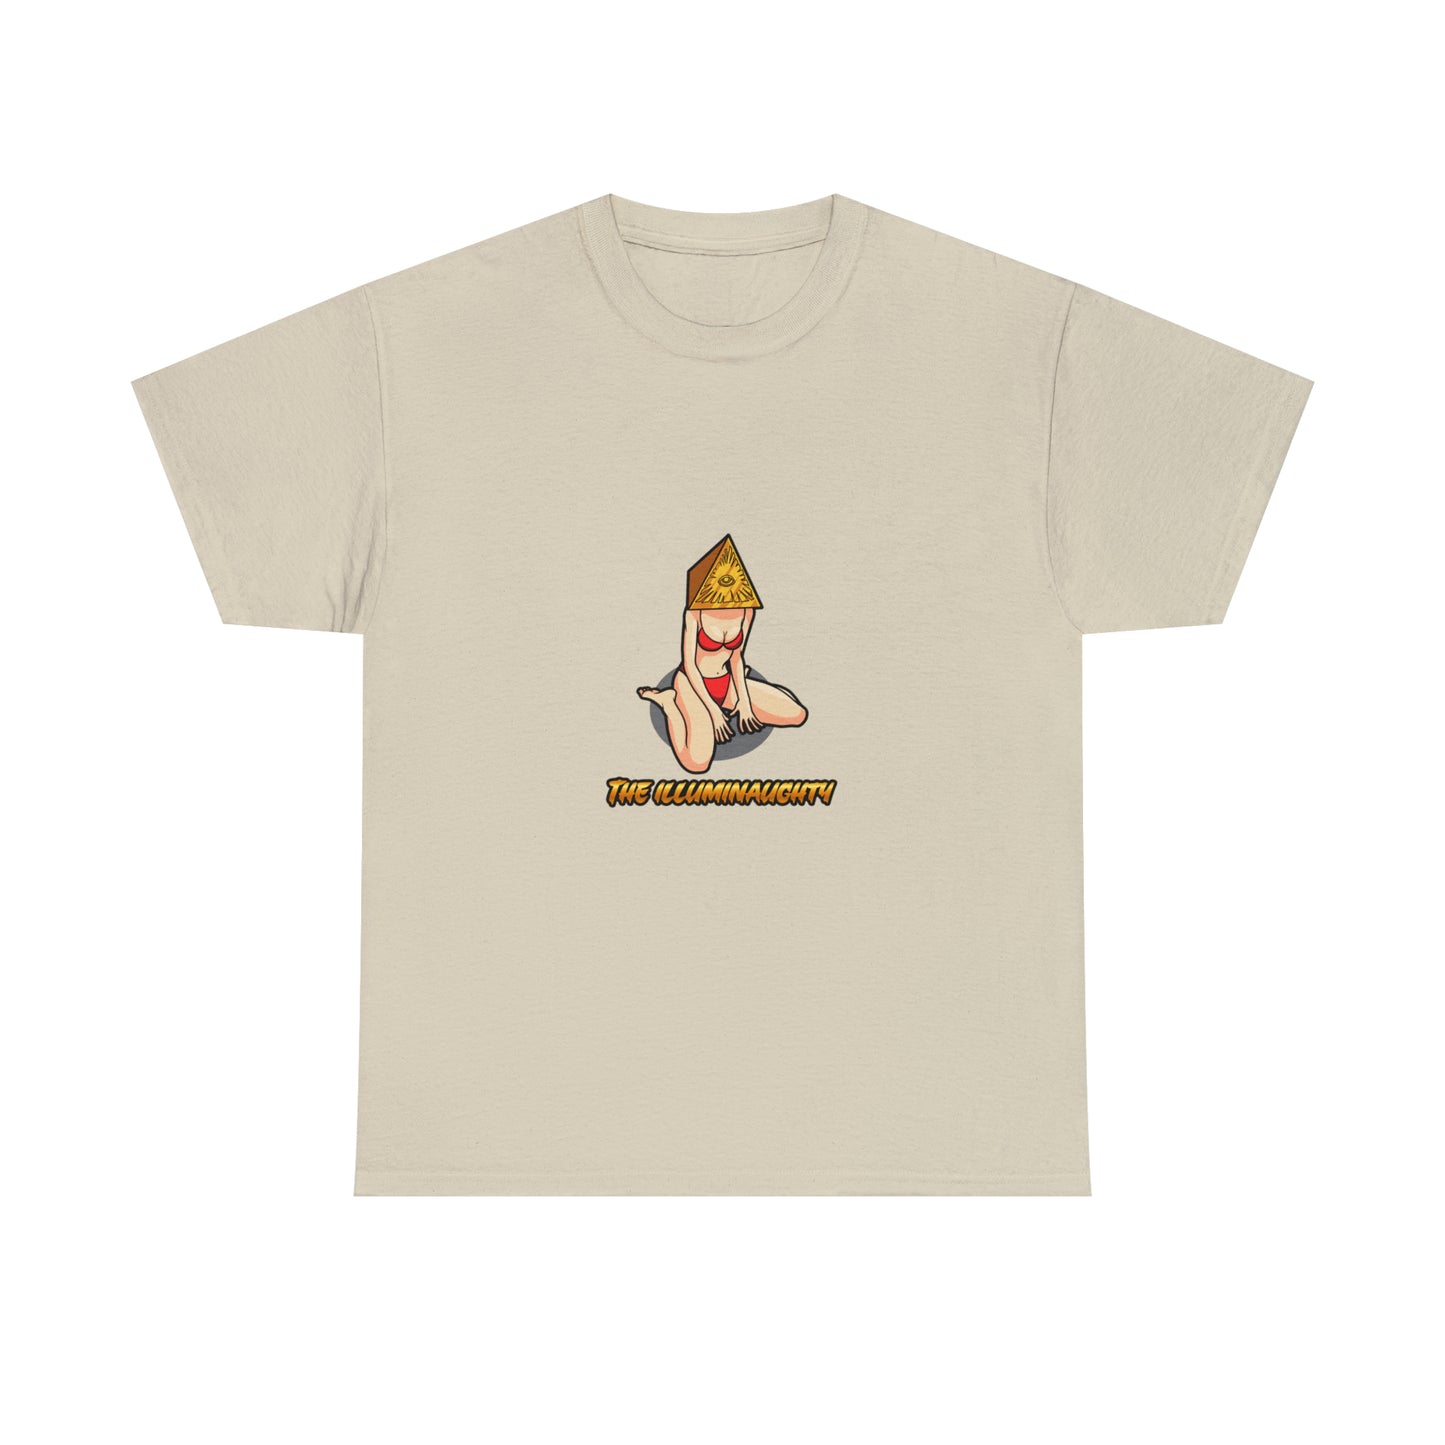 Custom Parody T-shirt, The Illuminaughty design